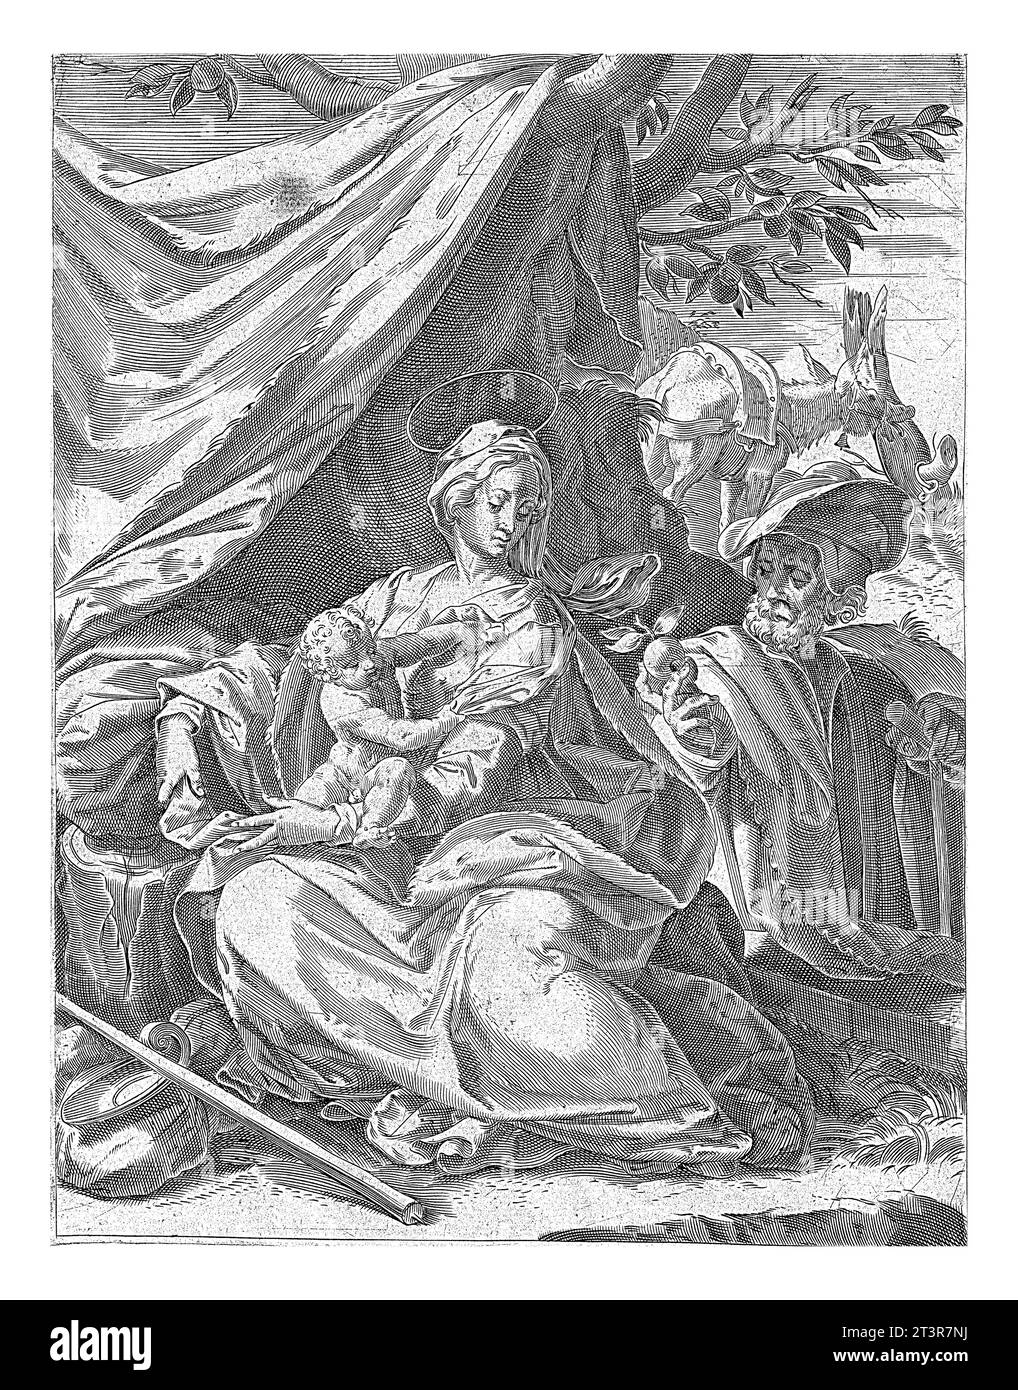 Riposo sulla fuga in Egitto, Agostino Carracci, dopo Bernardino Passeri, 1567 - 1602 la Sacra famiglia riposa davanti a un panno drappeggiato sopra tre Foto Stock